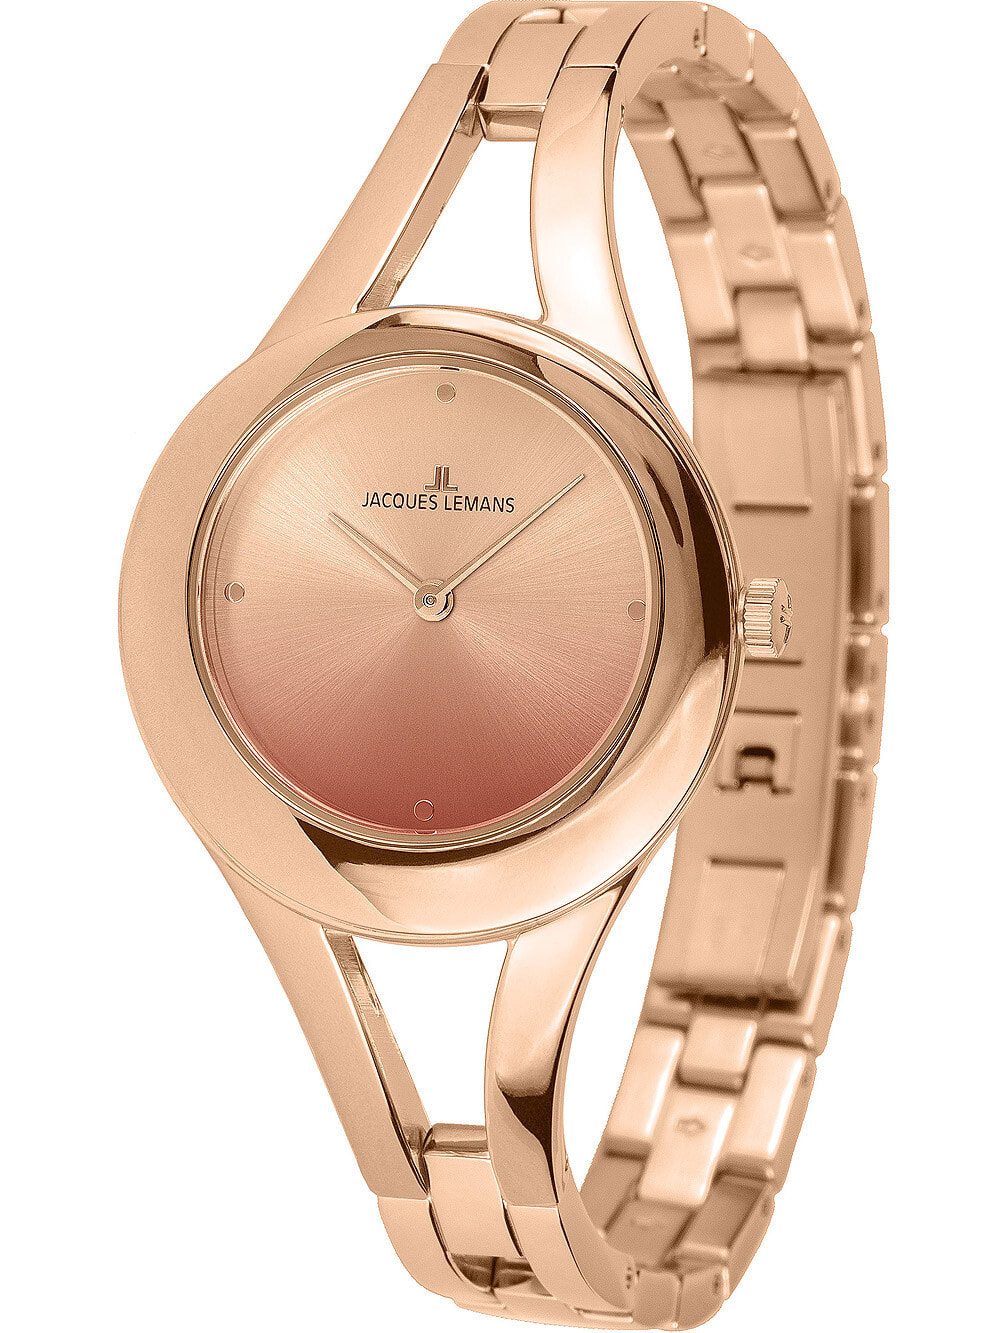 Женские наручные кварцевые часы Jacques Lemans  ремешок из нержавеющей стали. Водонепроницаемость-5 АТМ. Защищенное от царапин минеральное стекло.